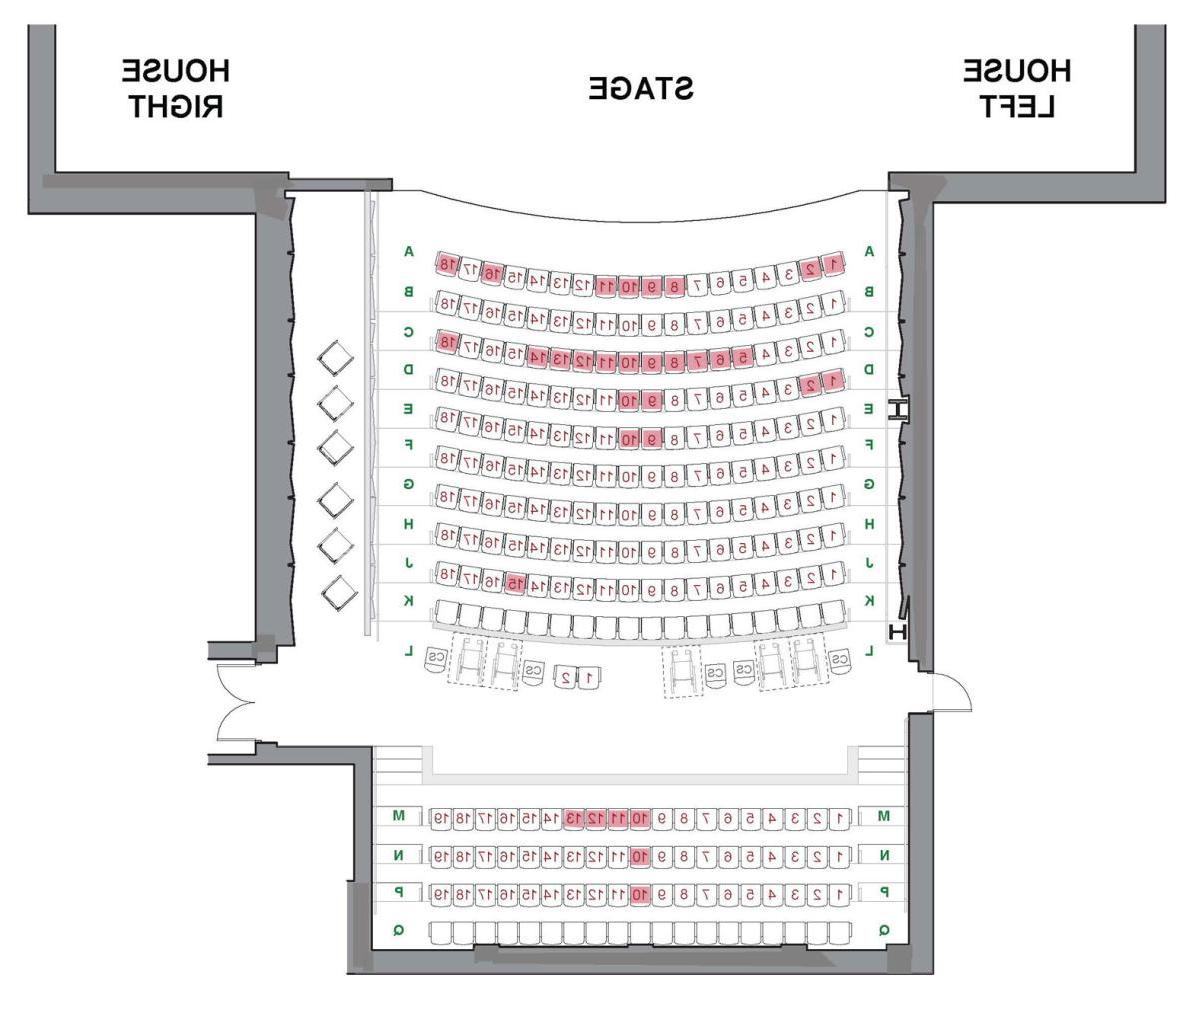 Theatre seating diagram